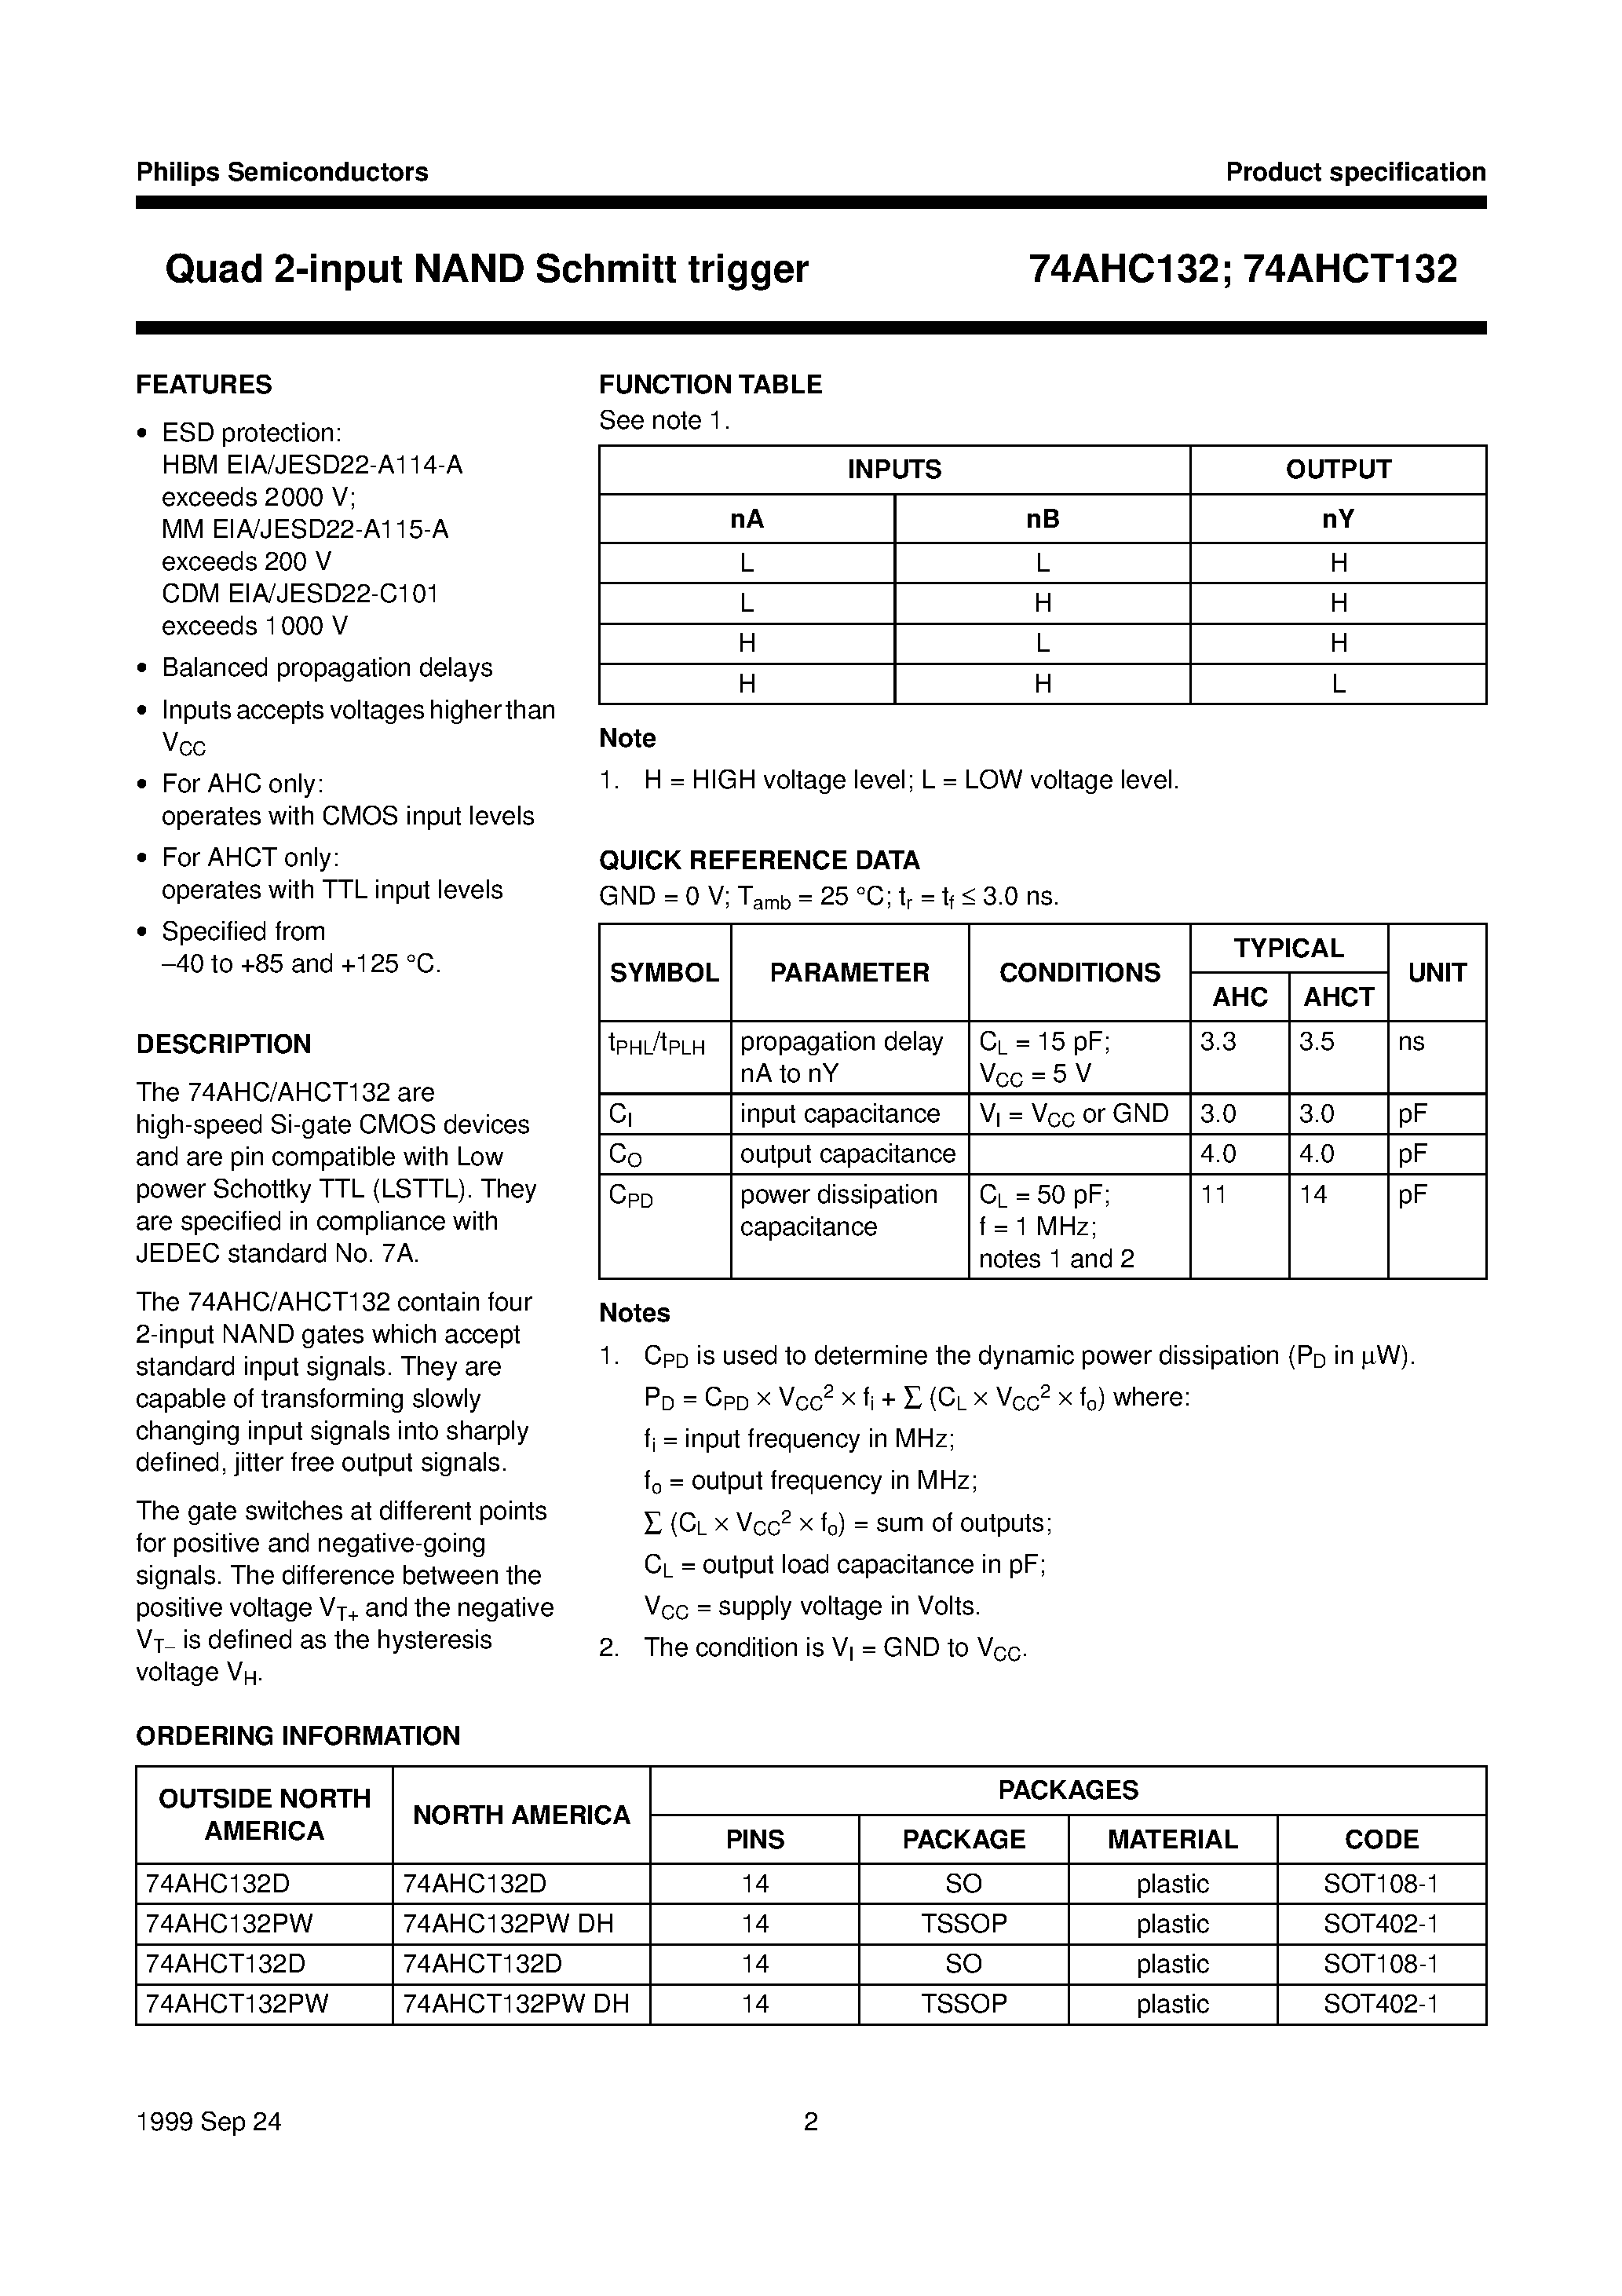 Datasheet 74AHC132PWDH - Quad 2-input NAND Schmitt trigger page 2